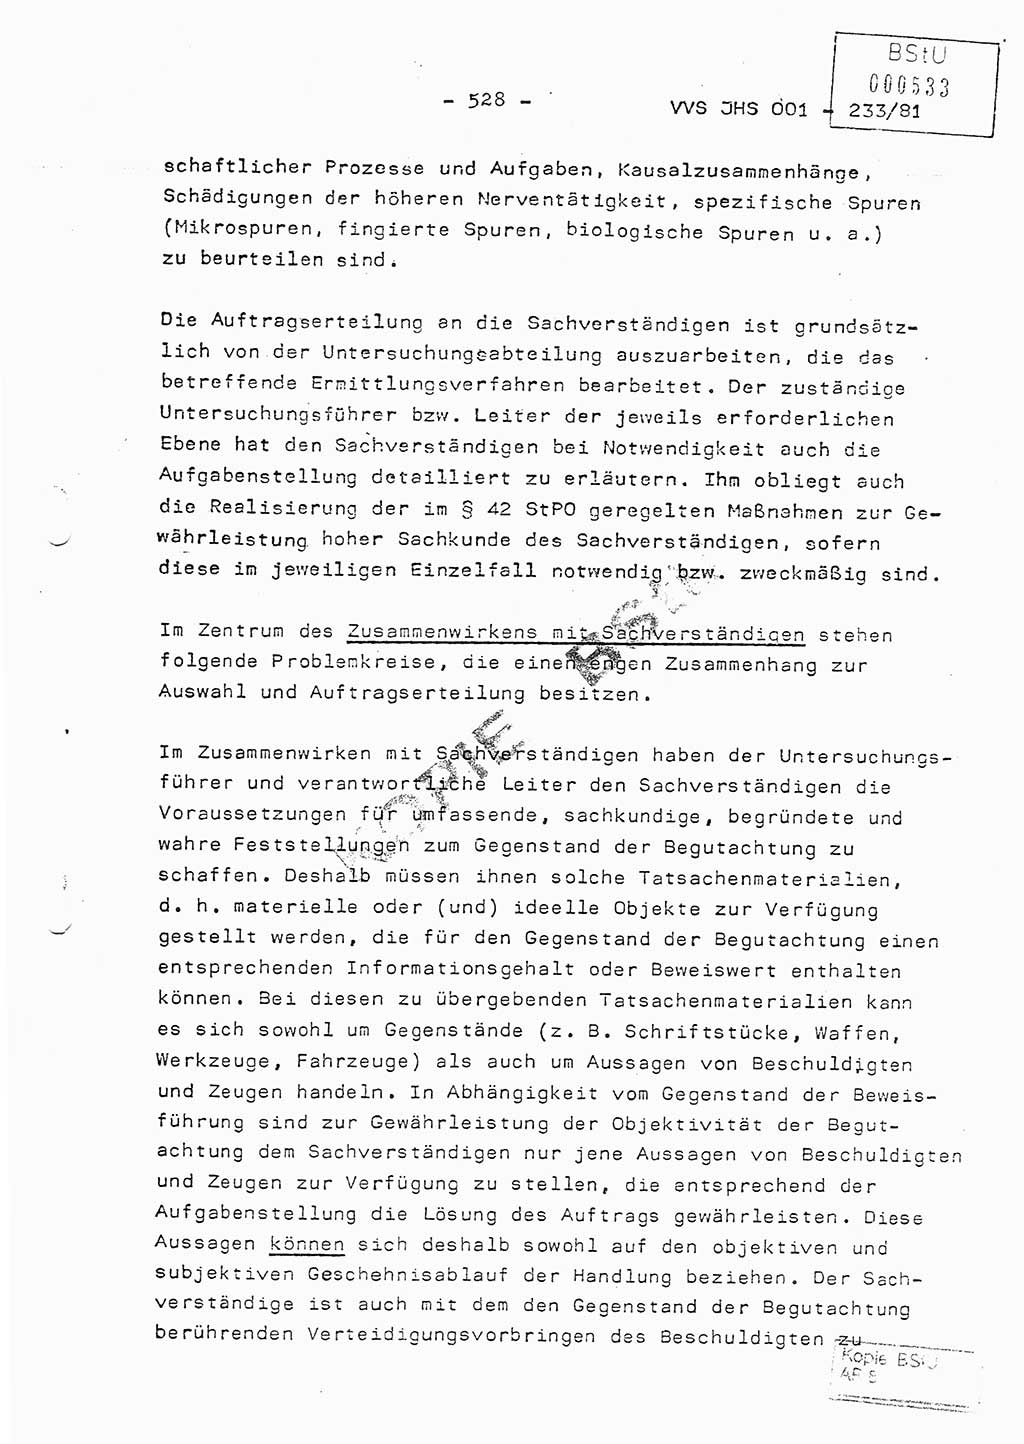 Dissertation Oberstleutnant Horst Zank (JHS), Oberstleutnant Dr. Karl-Heinz Knoblauch (JHS), Oberstleutnant Gustav-Adolf Kowalewski (HA Ⅸ), Oberstleutnant Wolfgang Plötner (HA Ⅸ), Ministerium für Staatssicherheit (MfS) [Deutsche Demokratische Republik (DDR)], Juristische Hochschule (JHS), Vertrauliche Verschlußsache (VVS) o001-233/81, Potsdam 1981, Blatt 528 (Diss. MfS DDR JHS VVS o001-233/81 1981, Bl. 528)